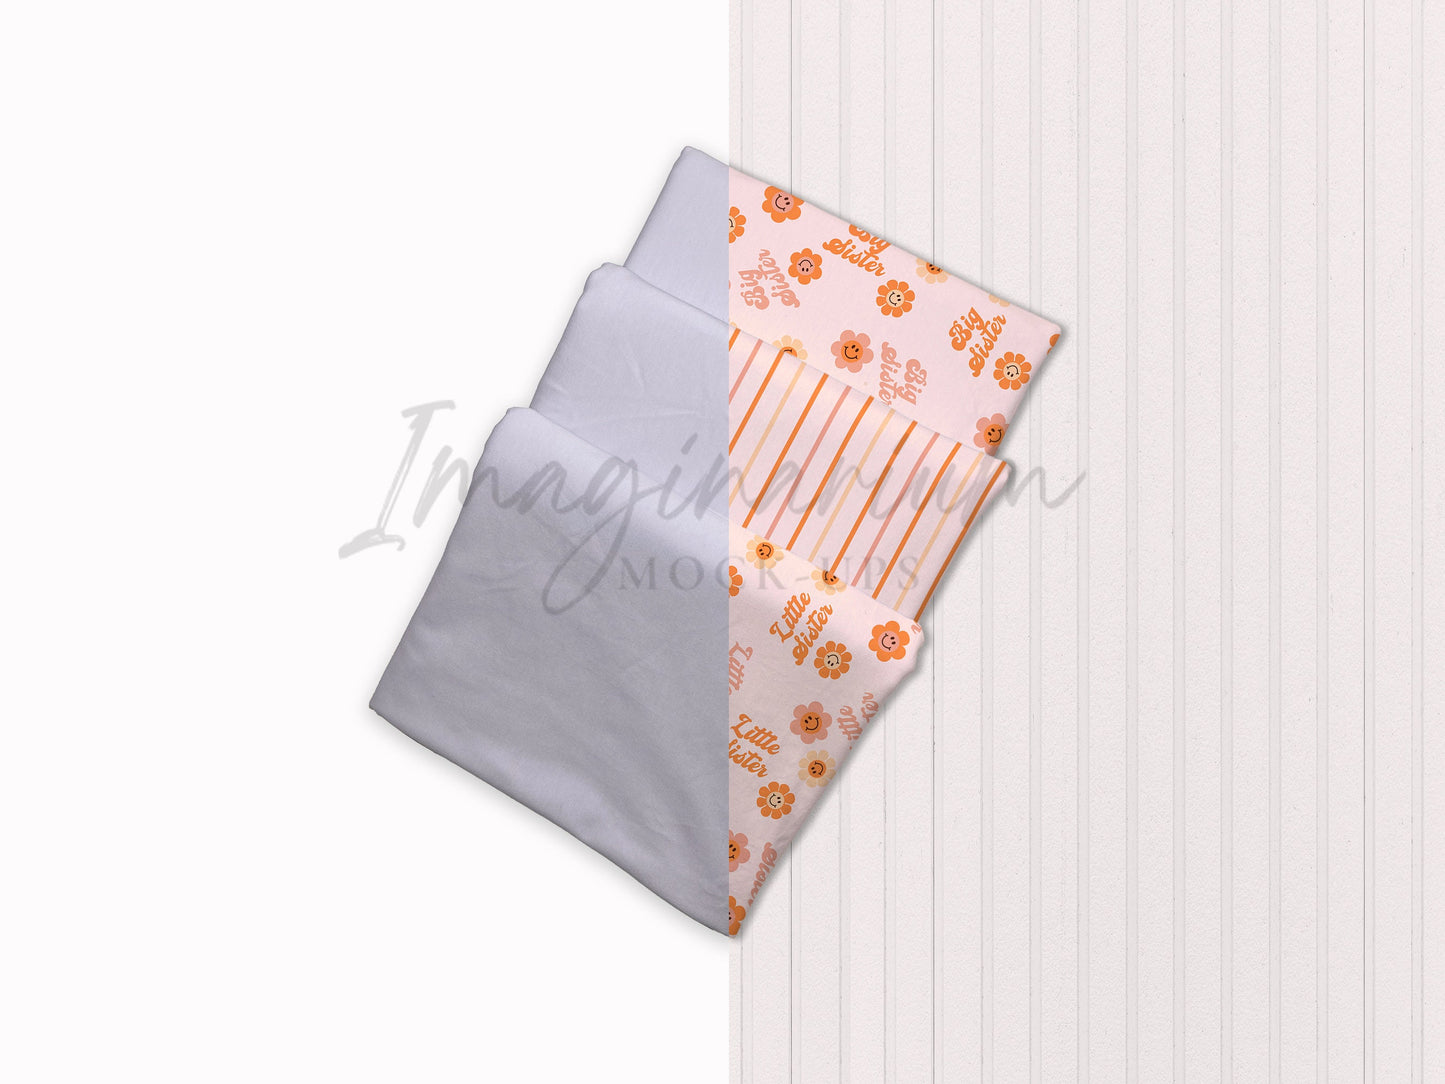 BUNDLE Customizable Folded Fabric Mock-ups, Realistic Mockup for Photoshop and Procreate